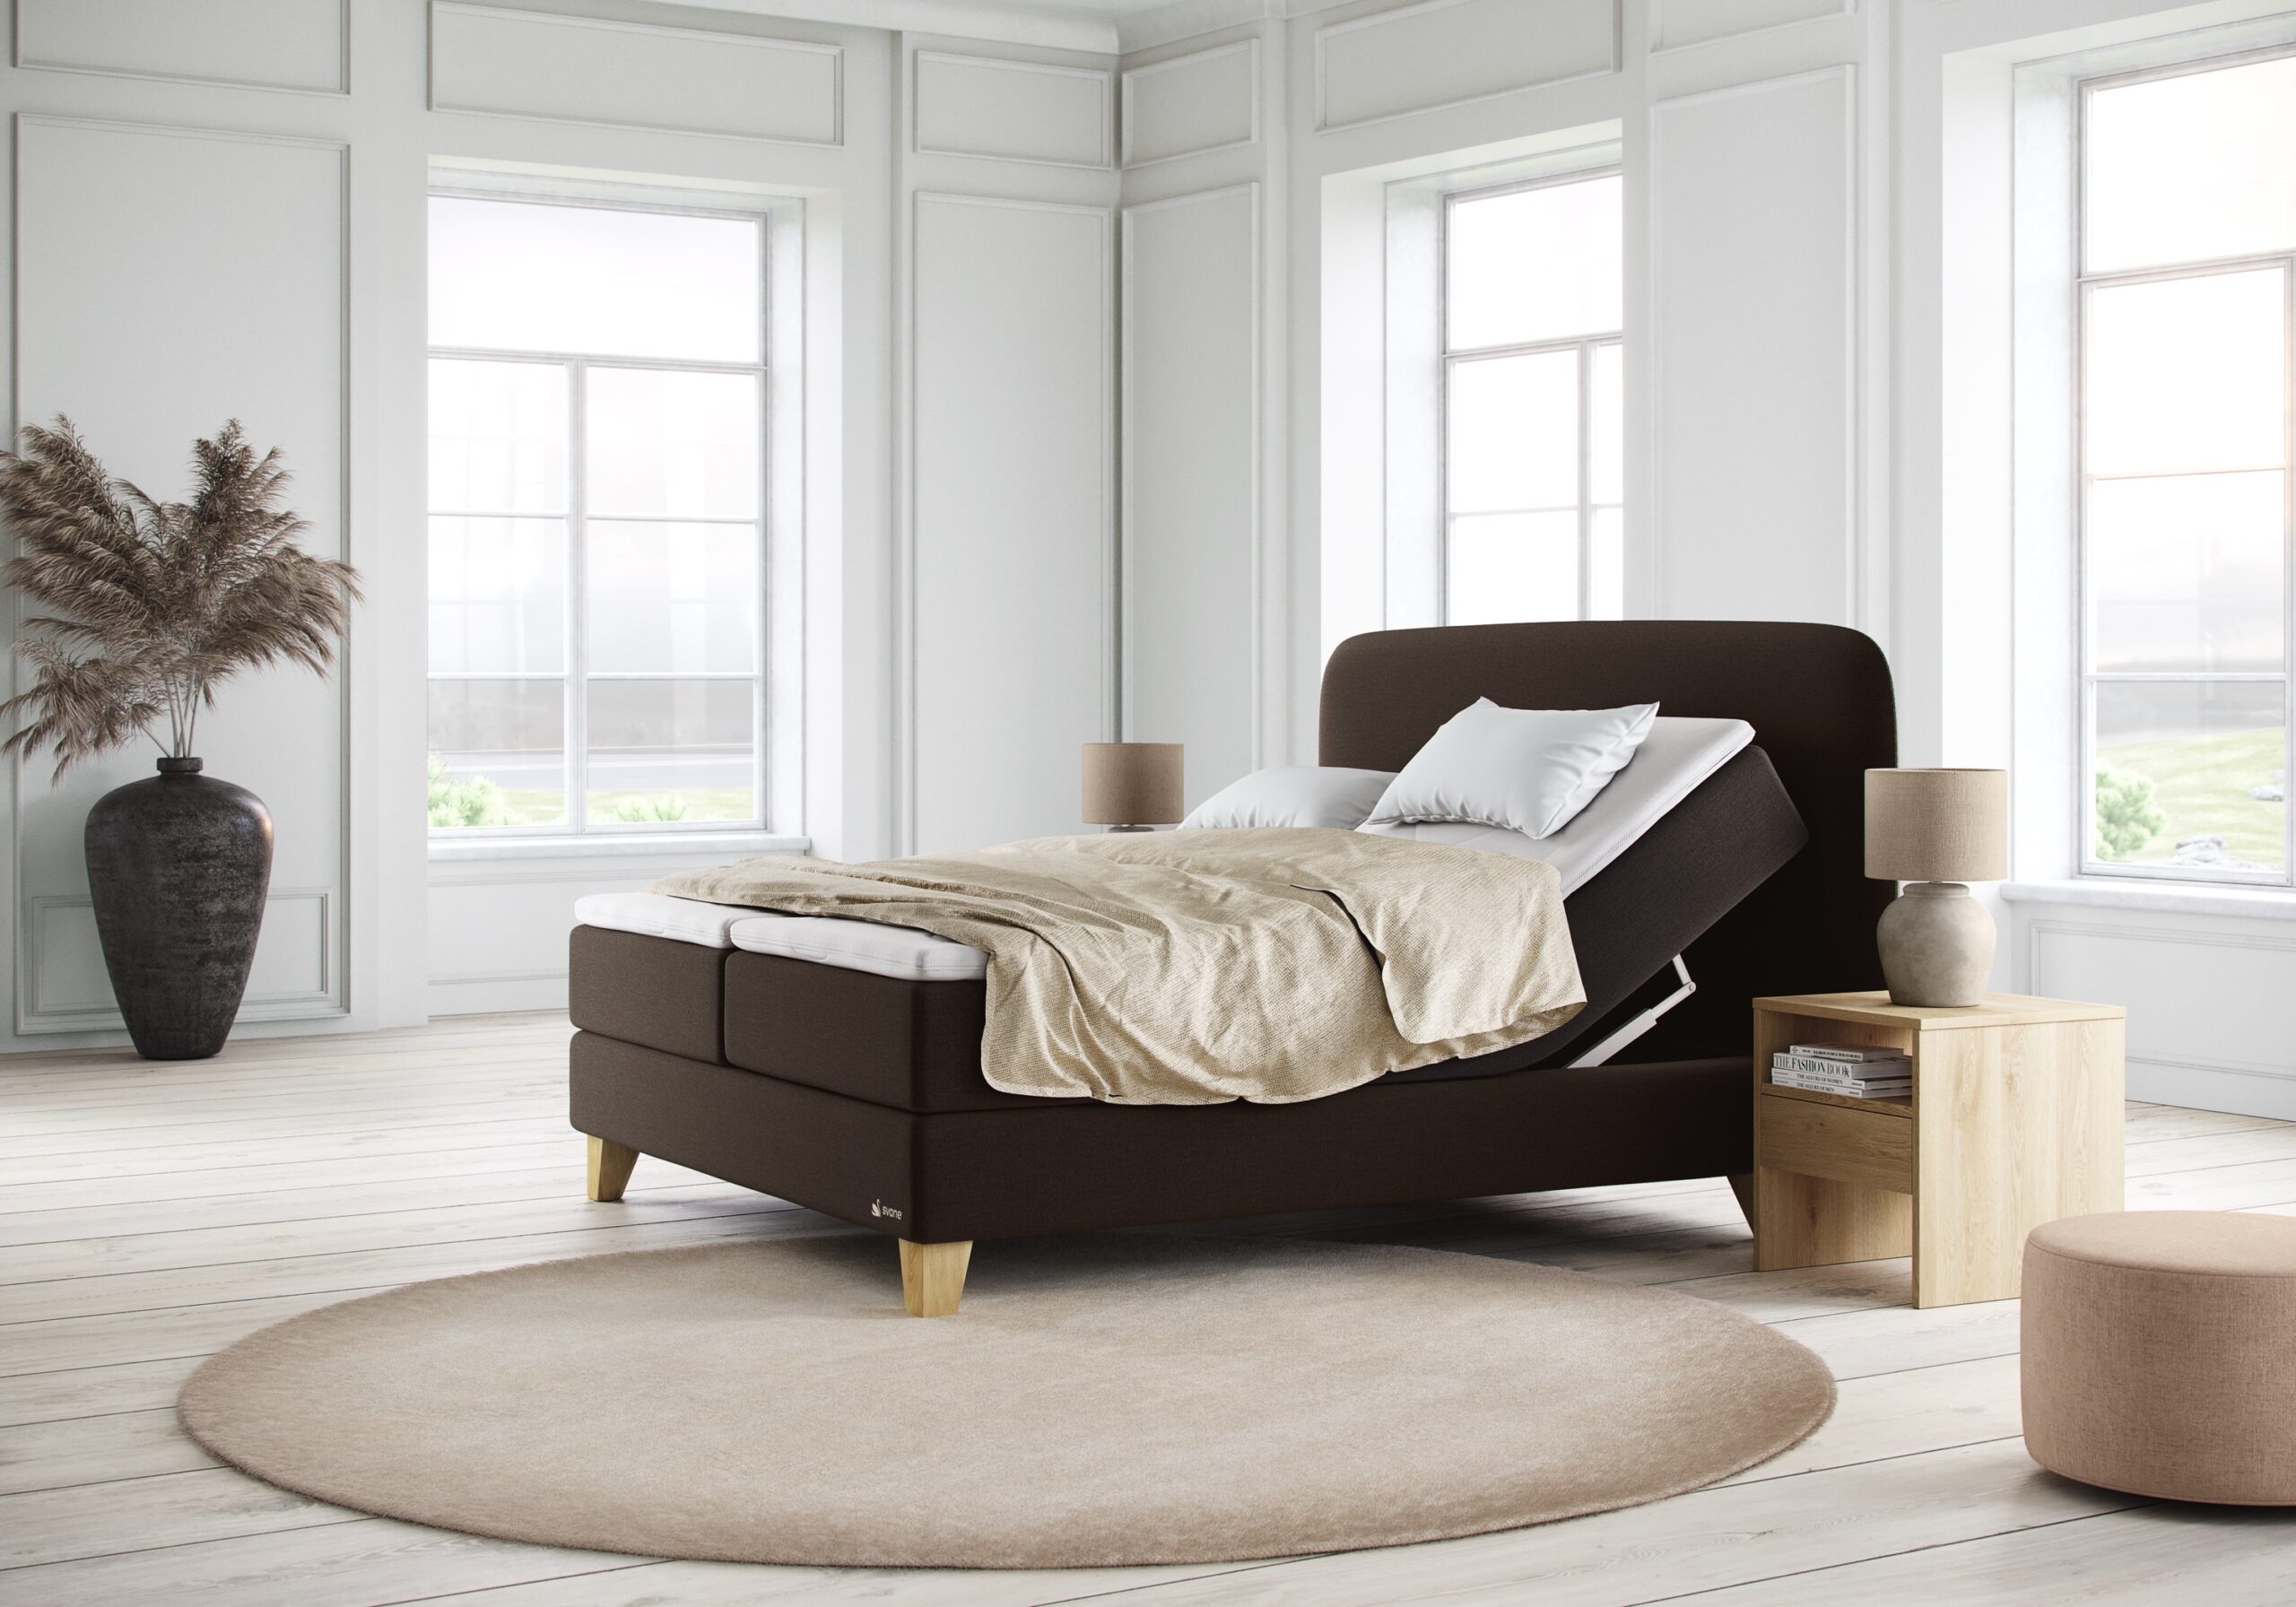 verstellbares Bett für mehr Komfort